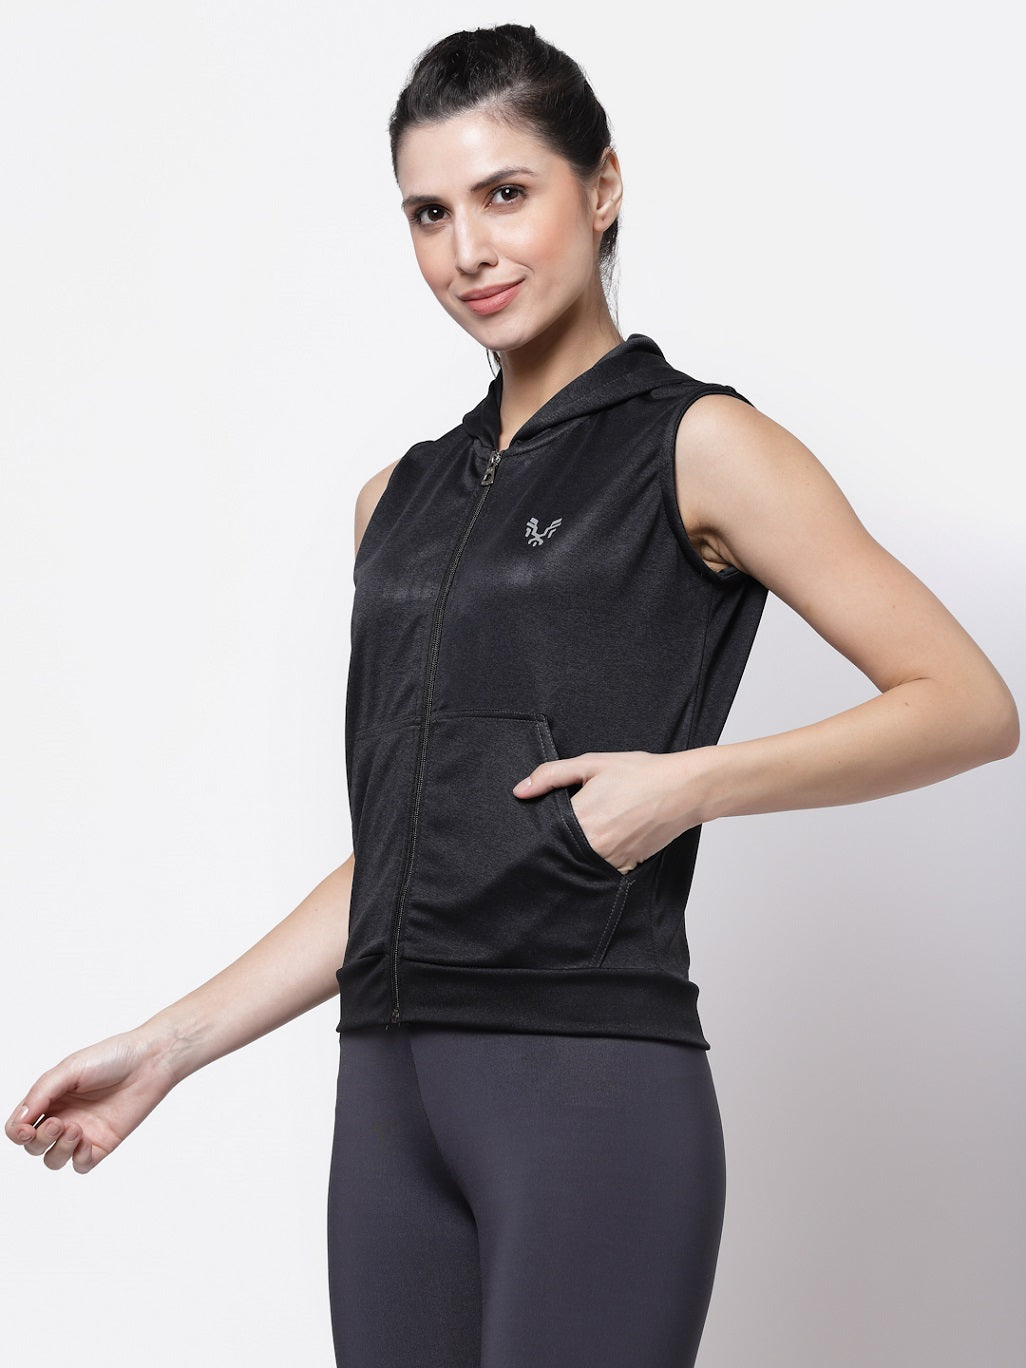 Uzarus Women's Sleeveless Hooded Training Sports Gym Jacket